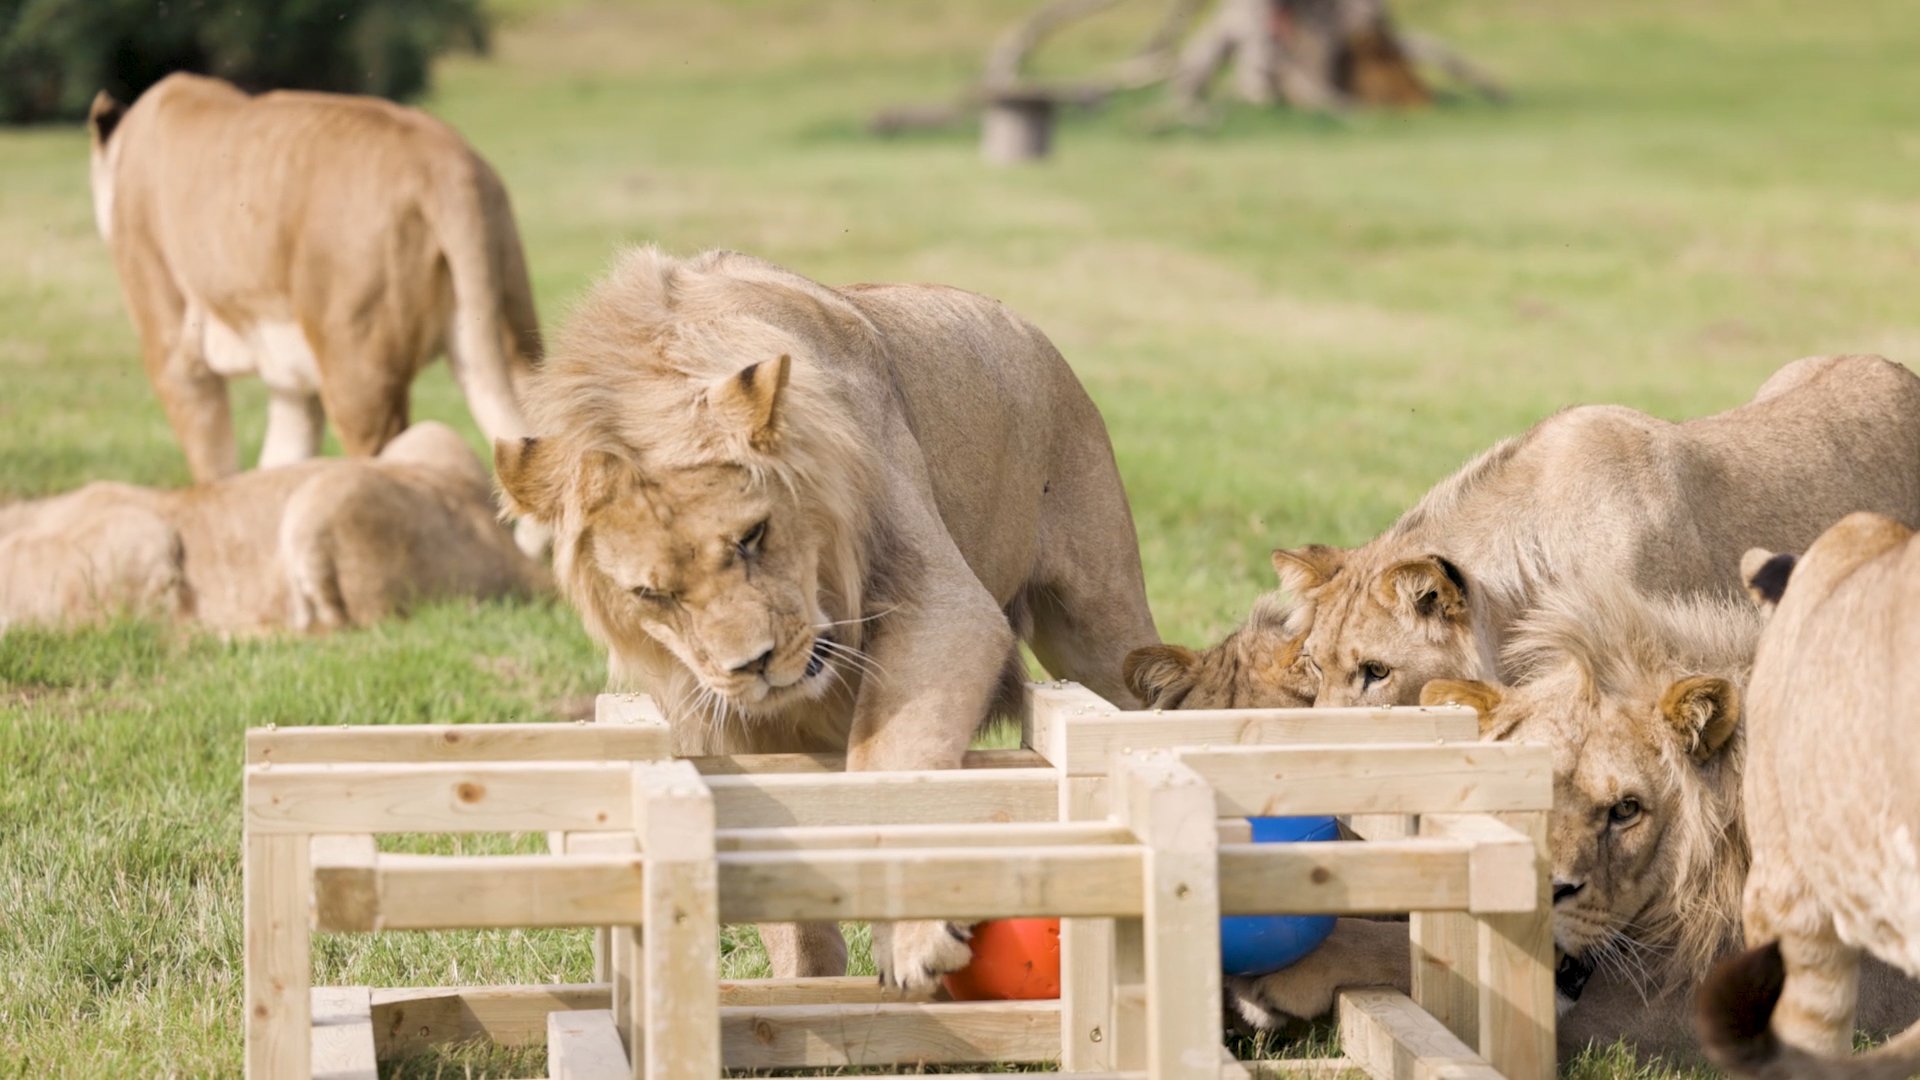 Lions investigate birthday enrichment toy.jpg